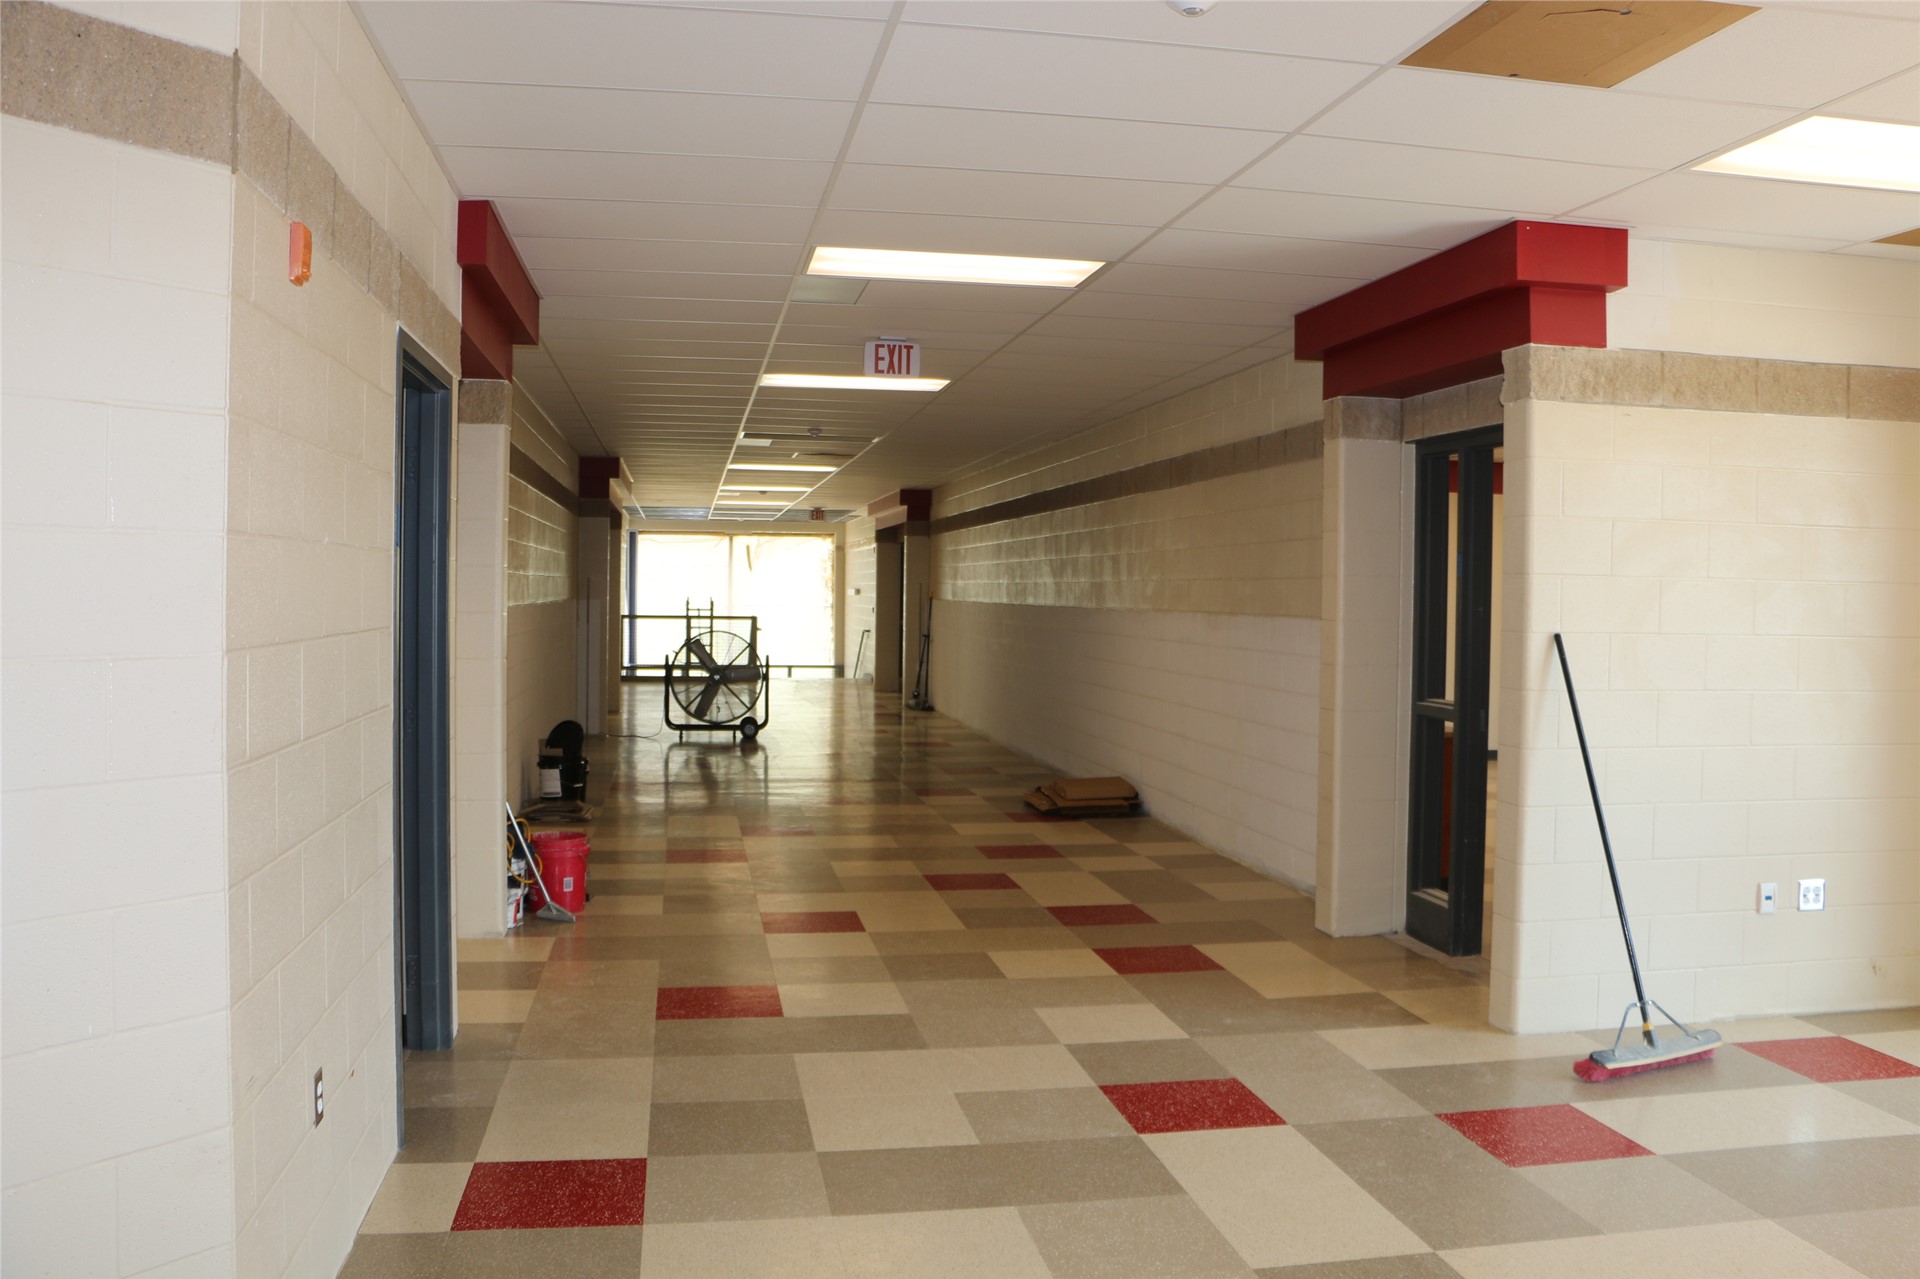 Social Studies Hallway (2nd Floor - East Academic Wing)